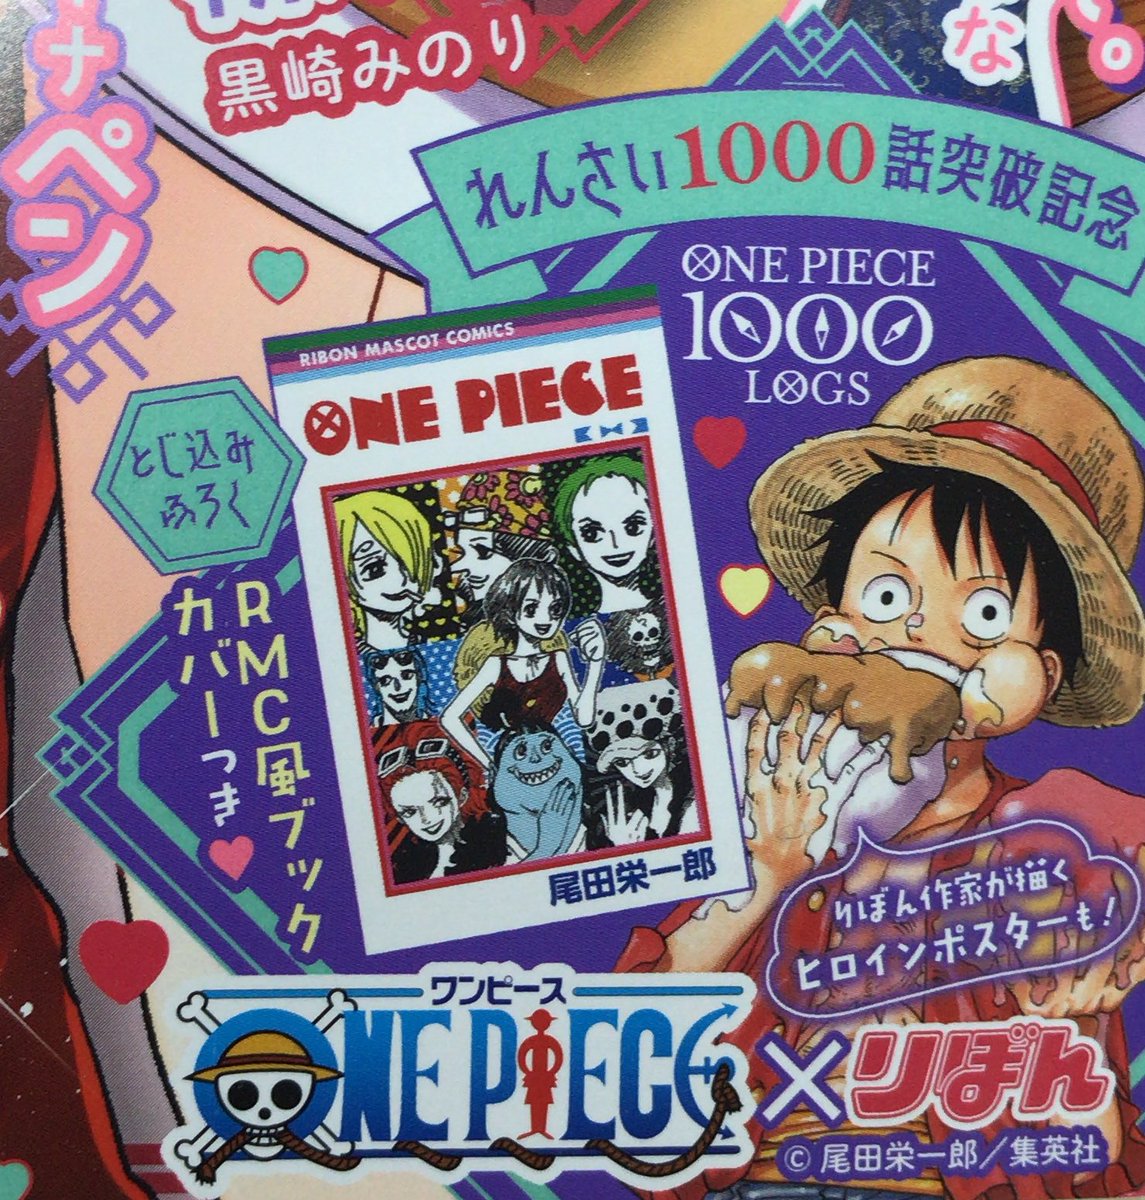 One Pieceスタッフ 公式 本日りぼん3月号発売日 Ribon60th ふろくでは Onepiece1000logs をお祝いしてrmc風カバーや りぼんの作家さんたちによるopキャラのヒロインたちの描き下ろしがあったり 超豪華 本当に色々してくださって ありがとう